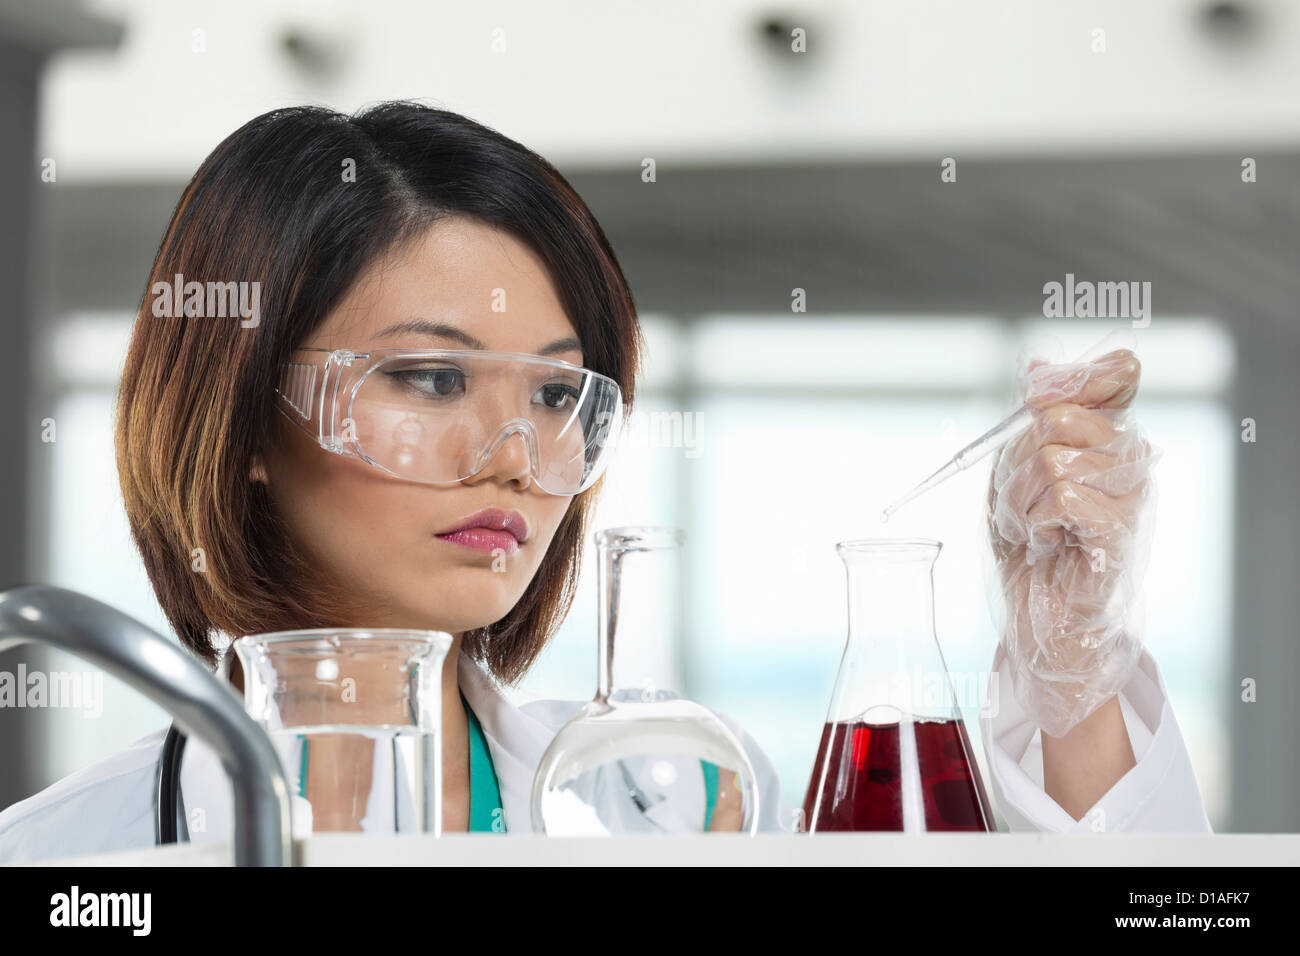 Un chercheur scientifique chinois tenant à une solution liquide dans un laboratoire. Femme scientifique de l'analyse d'une solution. Banque D'Images